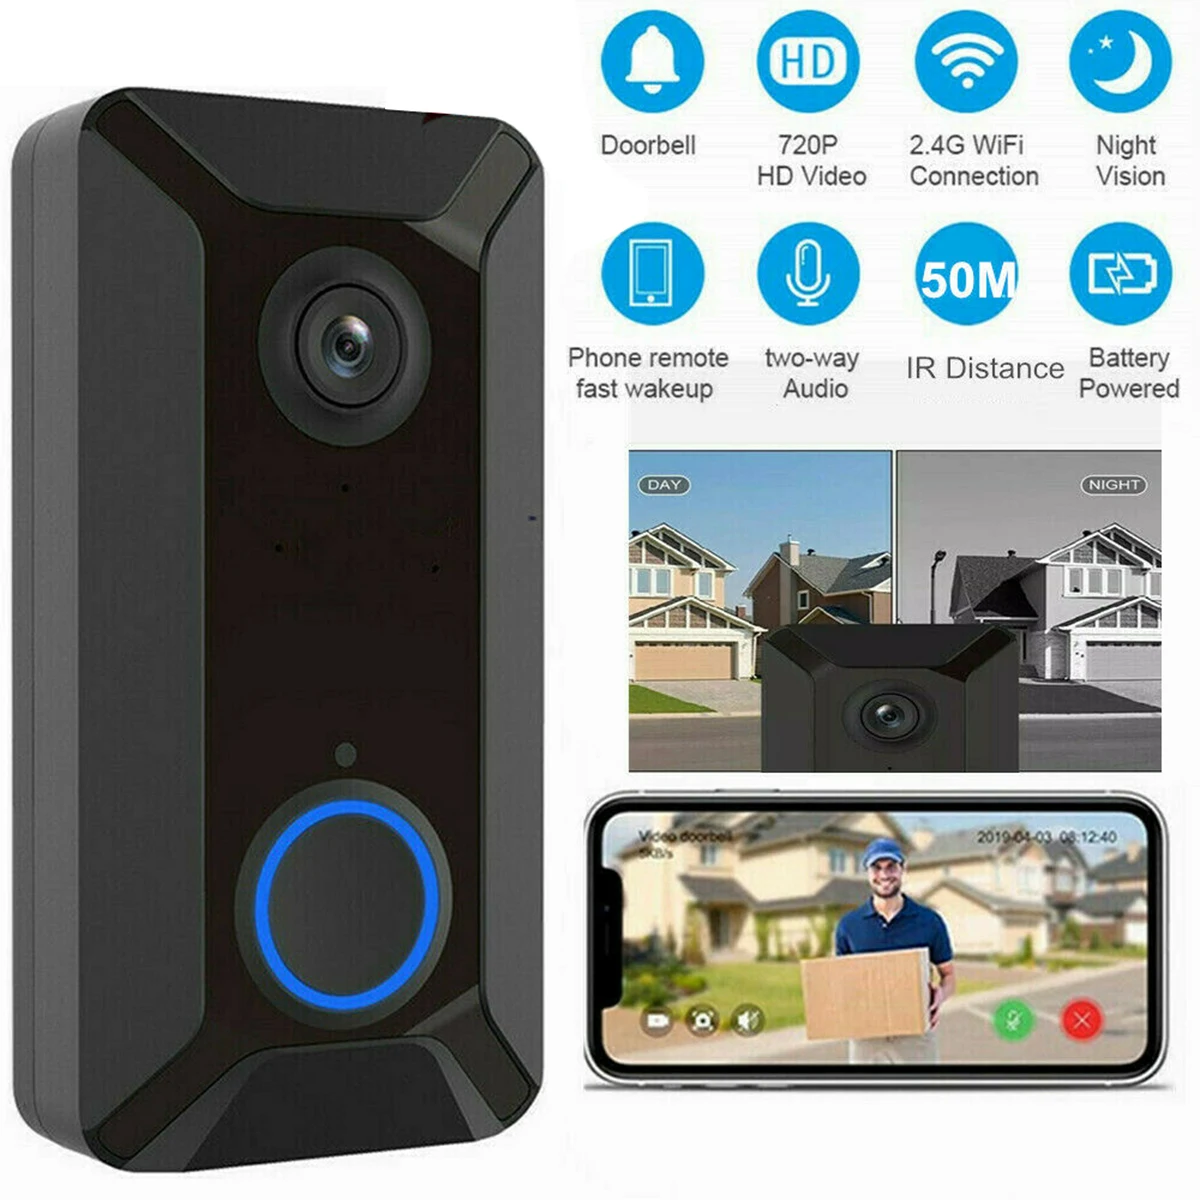 Беспроводной дверной звонок непромокаемый Wi-Fi умный видеодомофон дверной звонок 720P HD дверные звонки с датчиком движения PIR Поддержка 2,4G WiFi